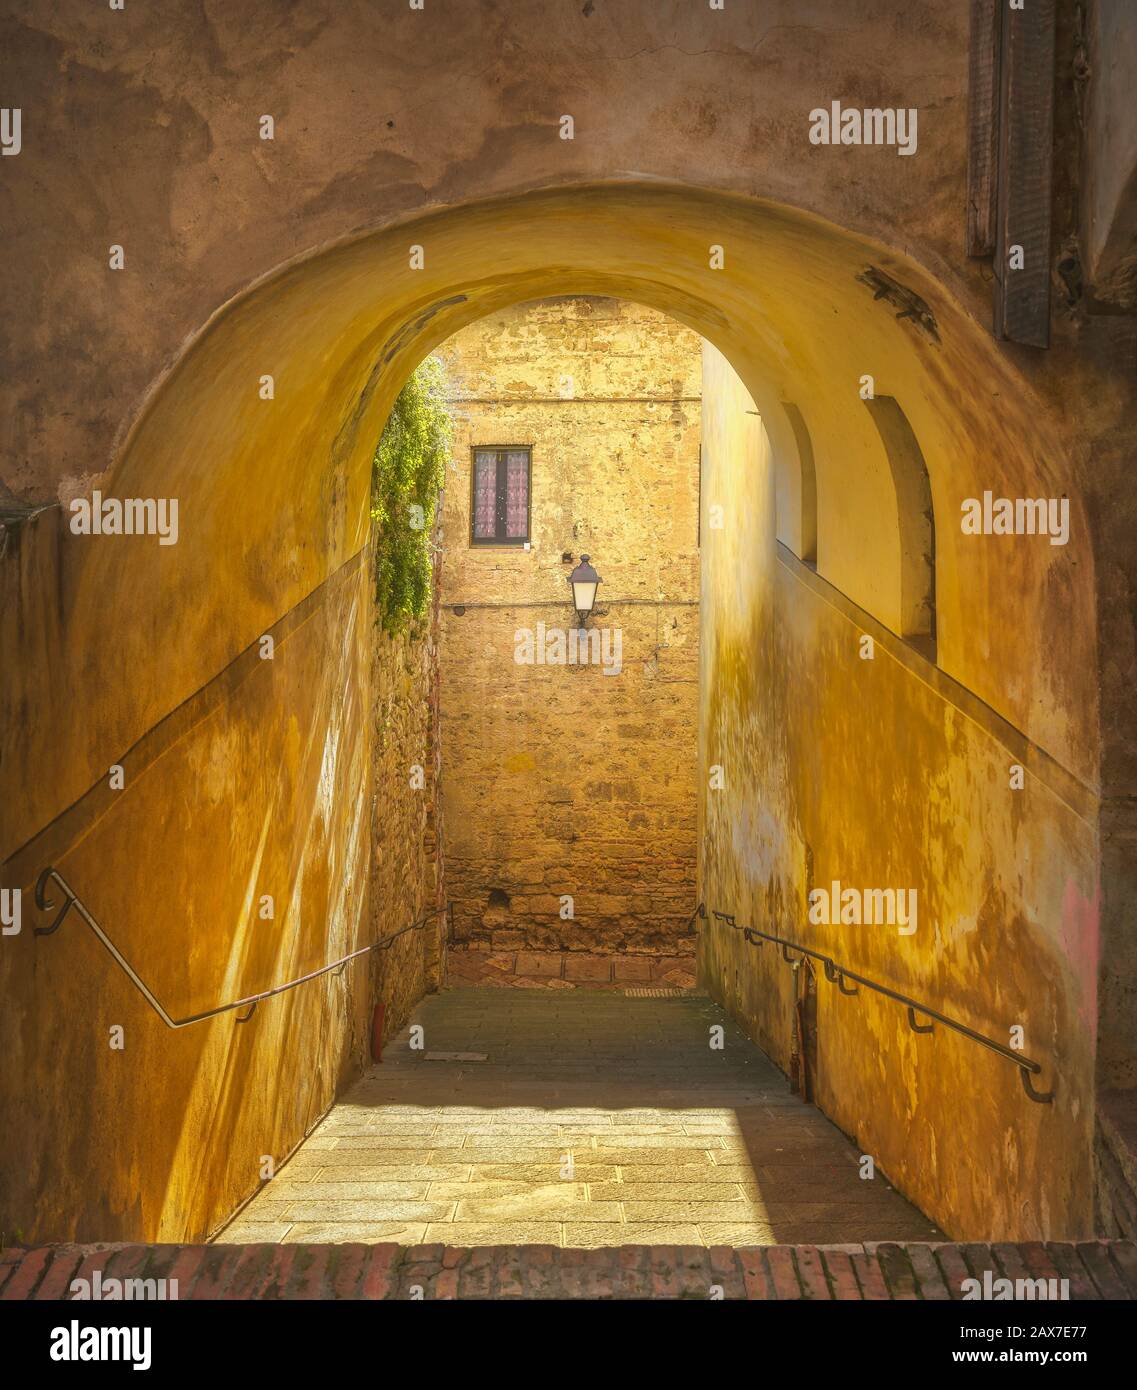 Colle Val d'Elsa, strada pittoresca e galleria nel centro storico. Siena, Toscana, Italia. Foto Stock